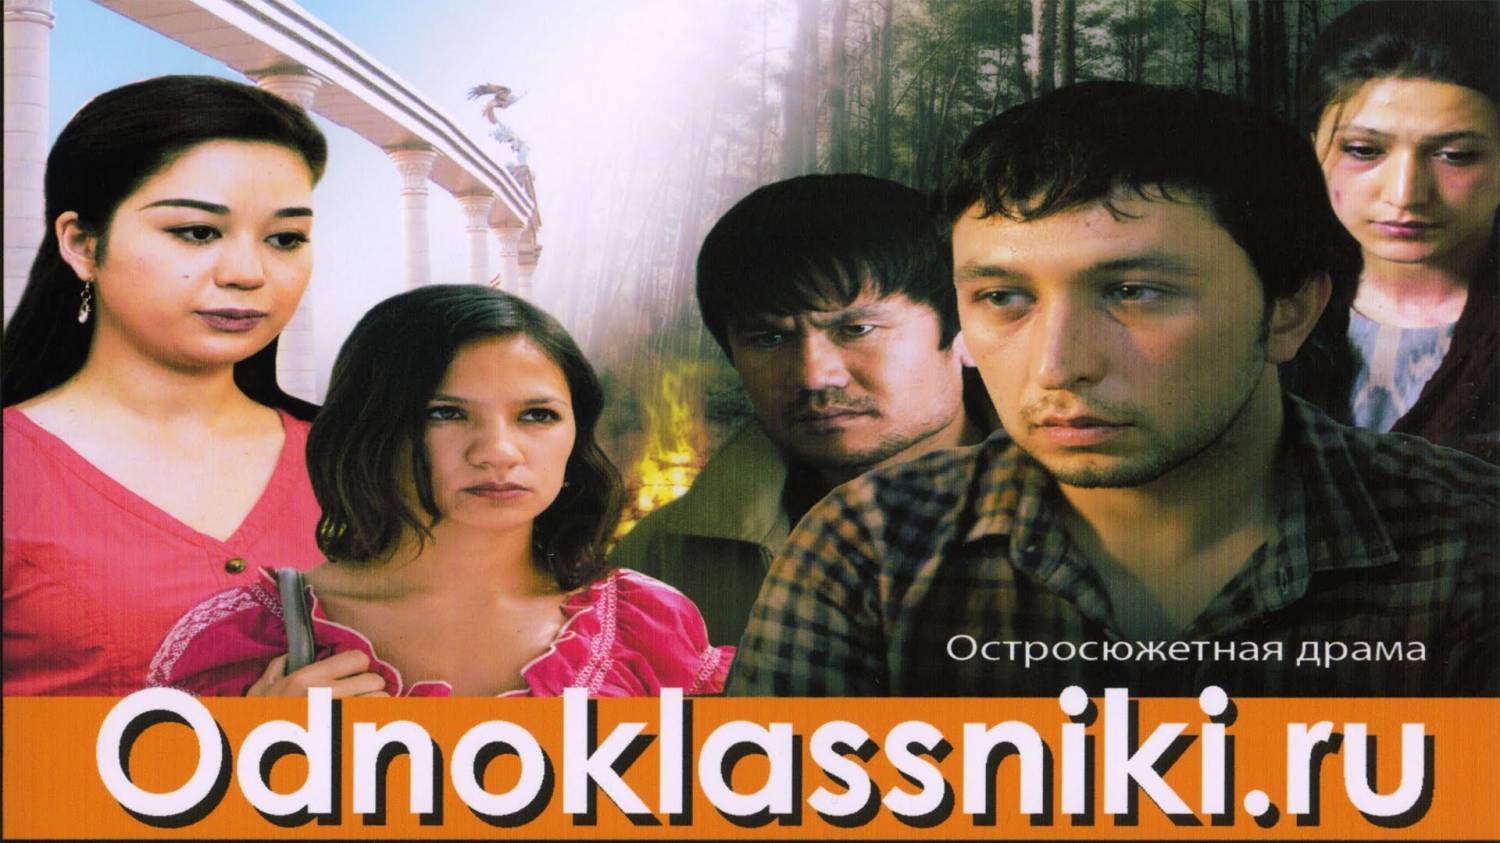 Odnoklassniki.ru O'zbek Film (na russkom yazike) смотреть онлайн